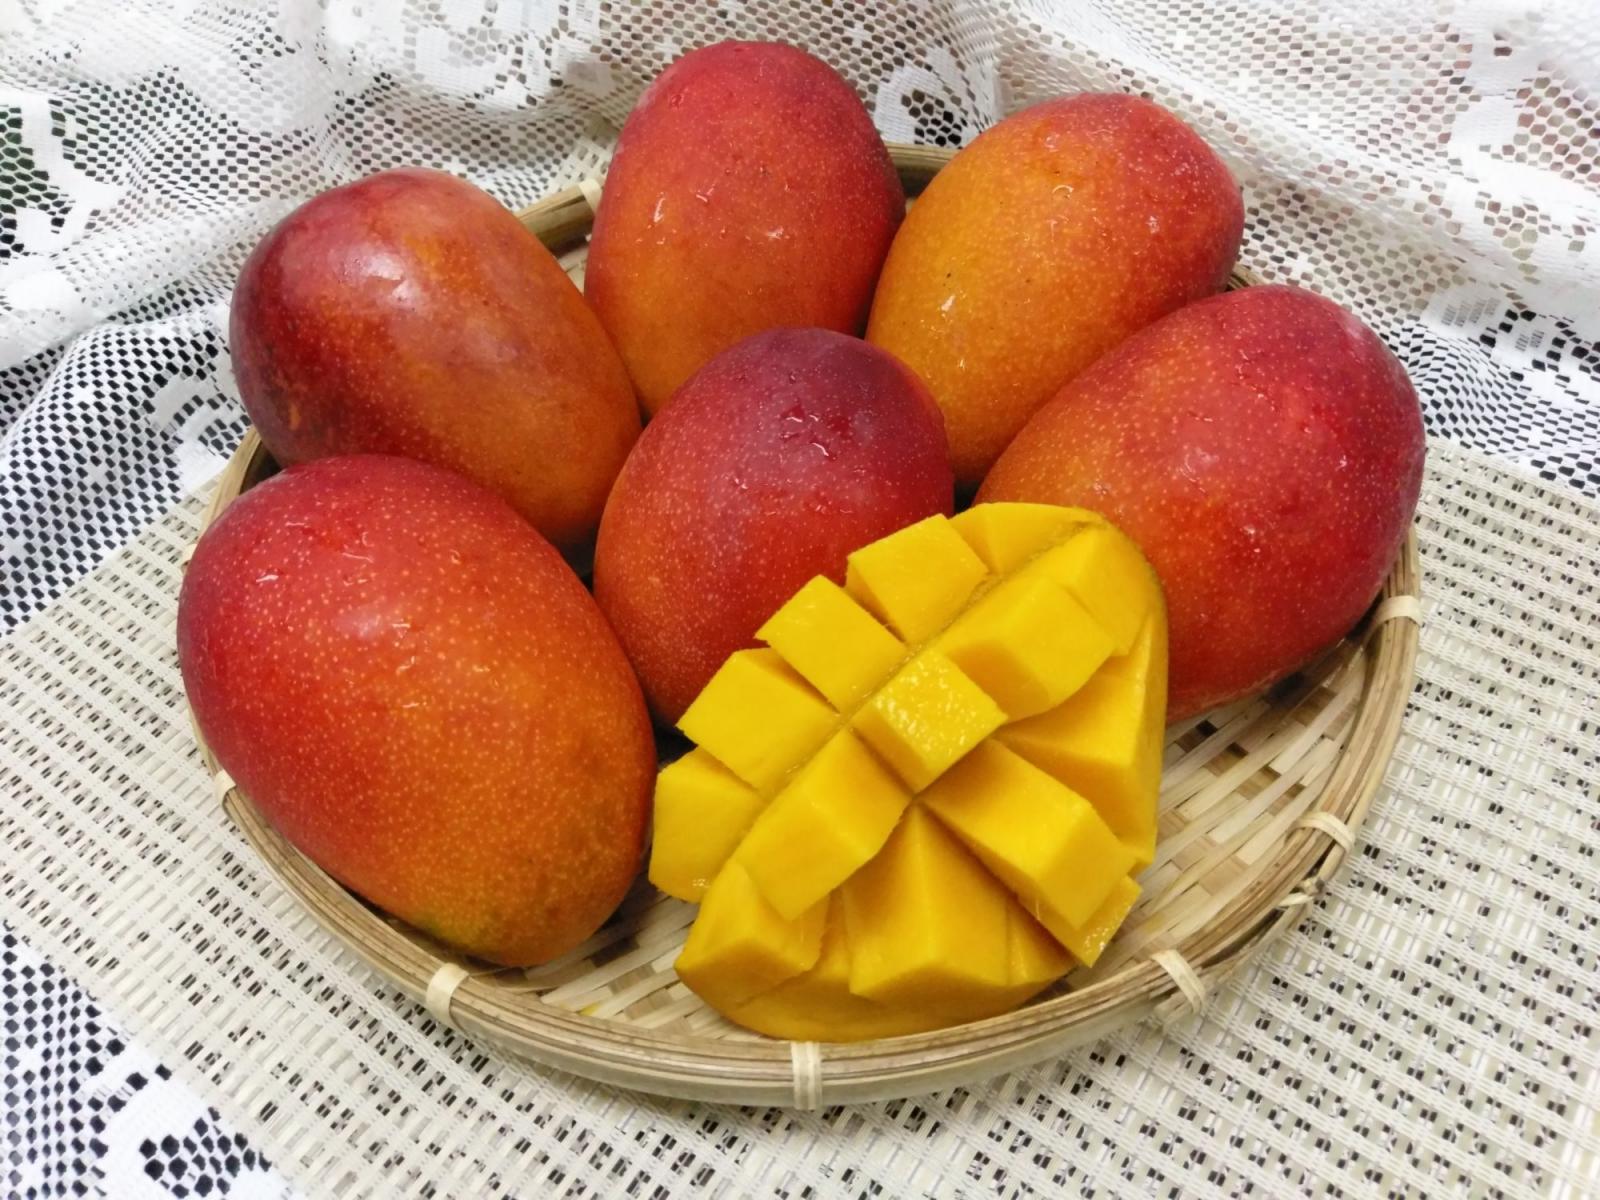 臺灣芒果品種多元，各有不 同風味特色可供消費者選擇